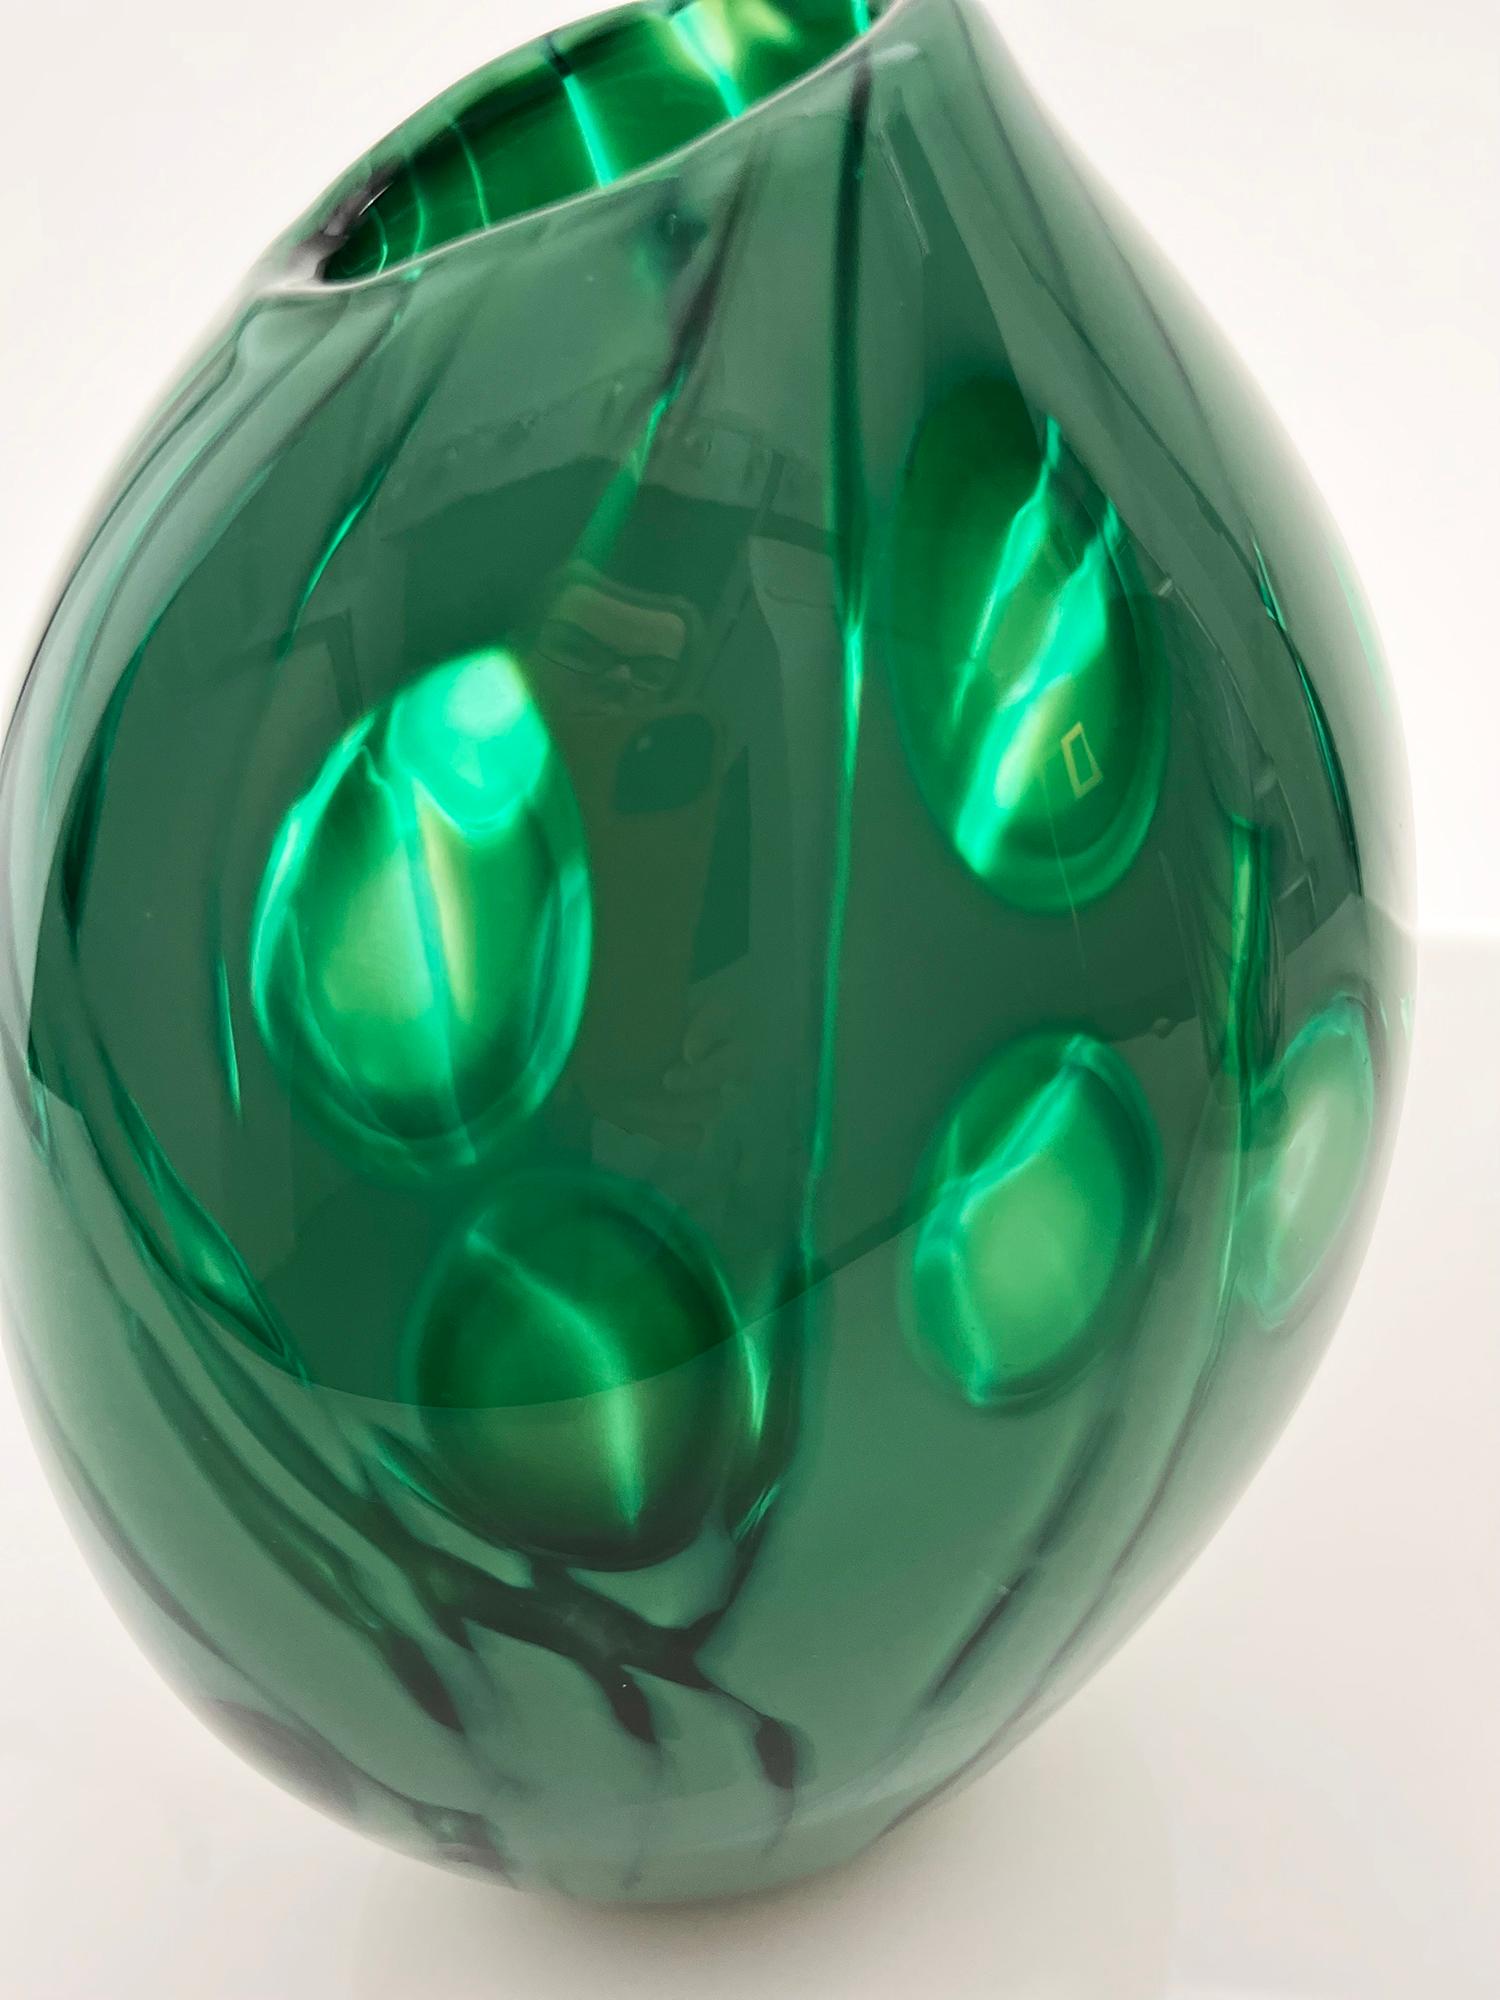 La dosette en verre vert émeraude est fabriquée selon la technique du Graal, qui consiste à découper un motif à travers des couches de verre sur une petite coupe vierge à l'aide de roues de gravure au diamant. L'ébauche est ensuite chauffée et